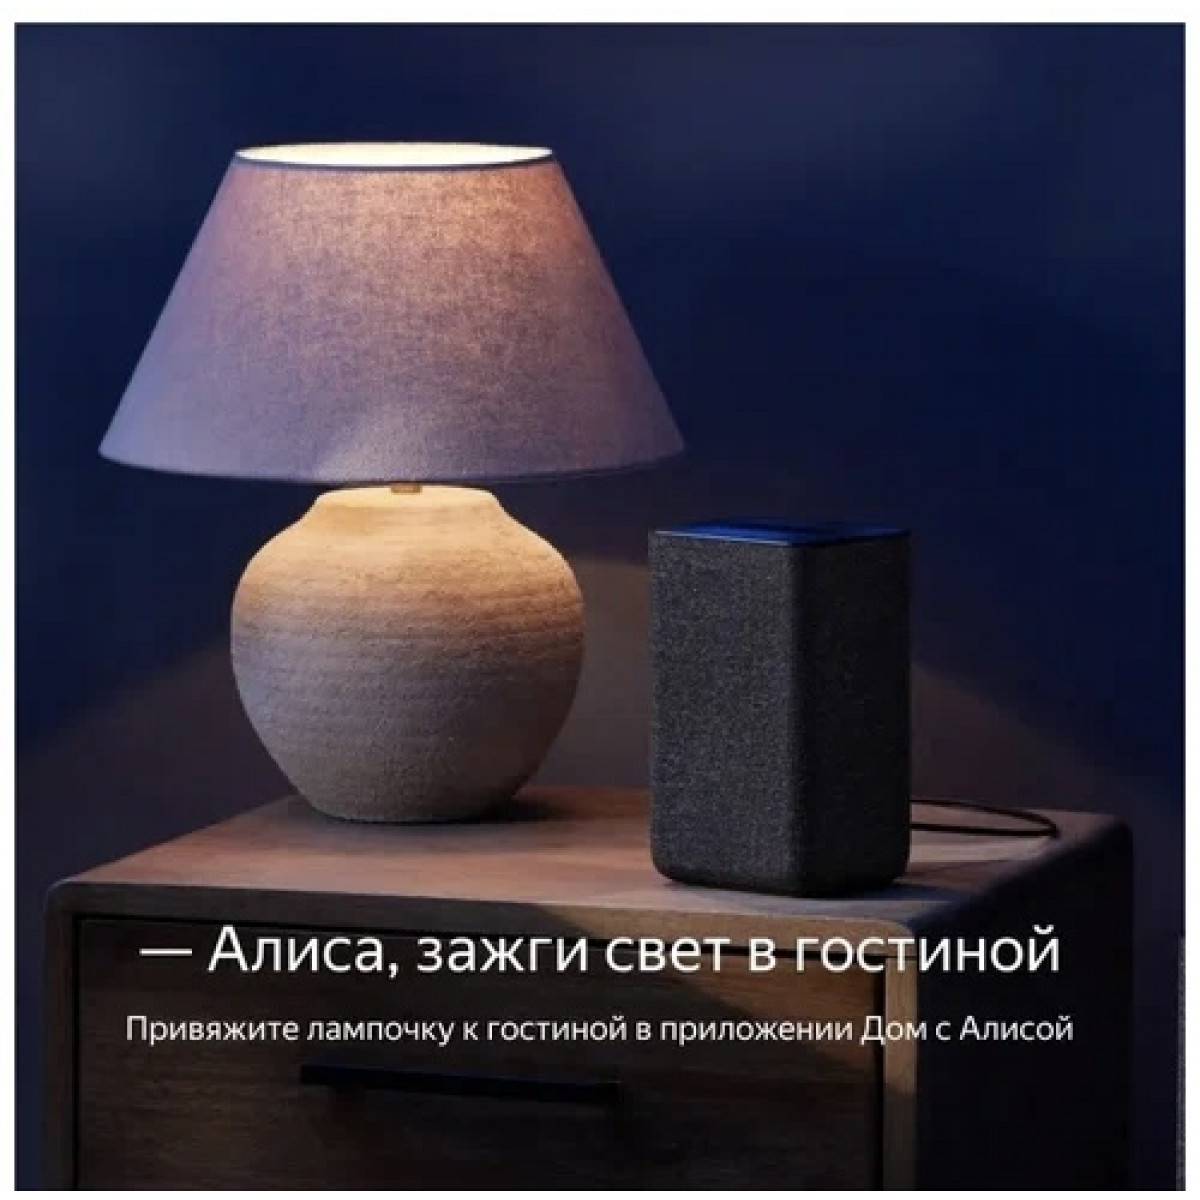 Умная лампочка Яндекса, работает с Алисой, GU10